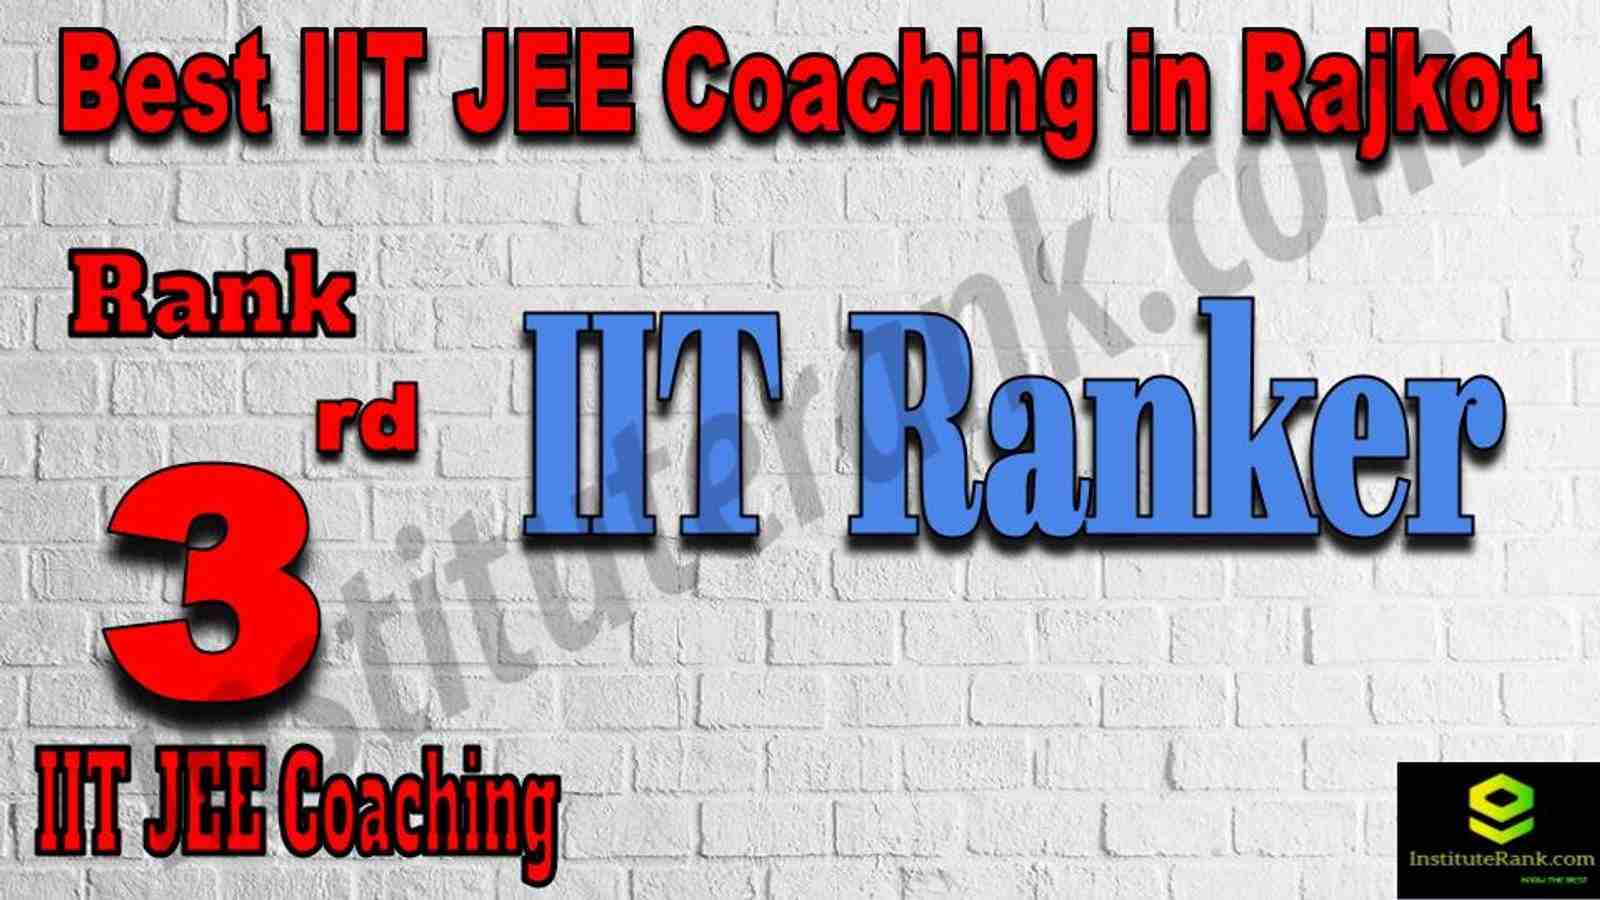 3rd Best IIT JEE Coaching in Rajkot